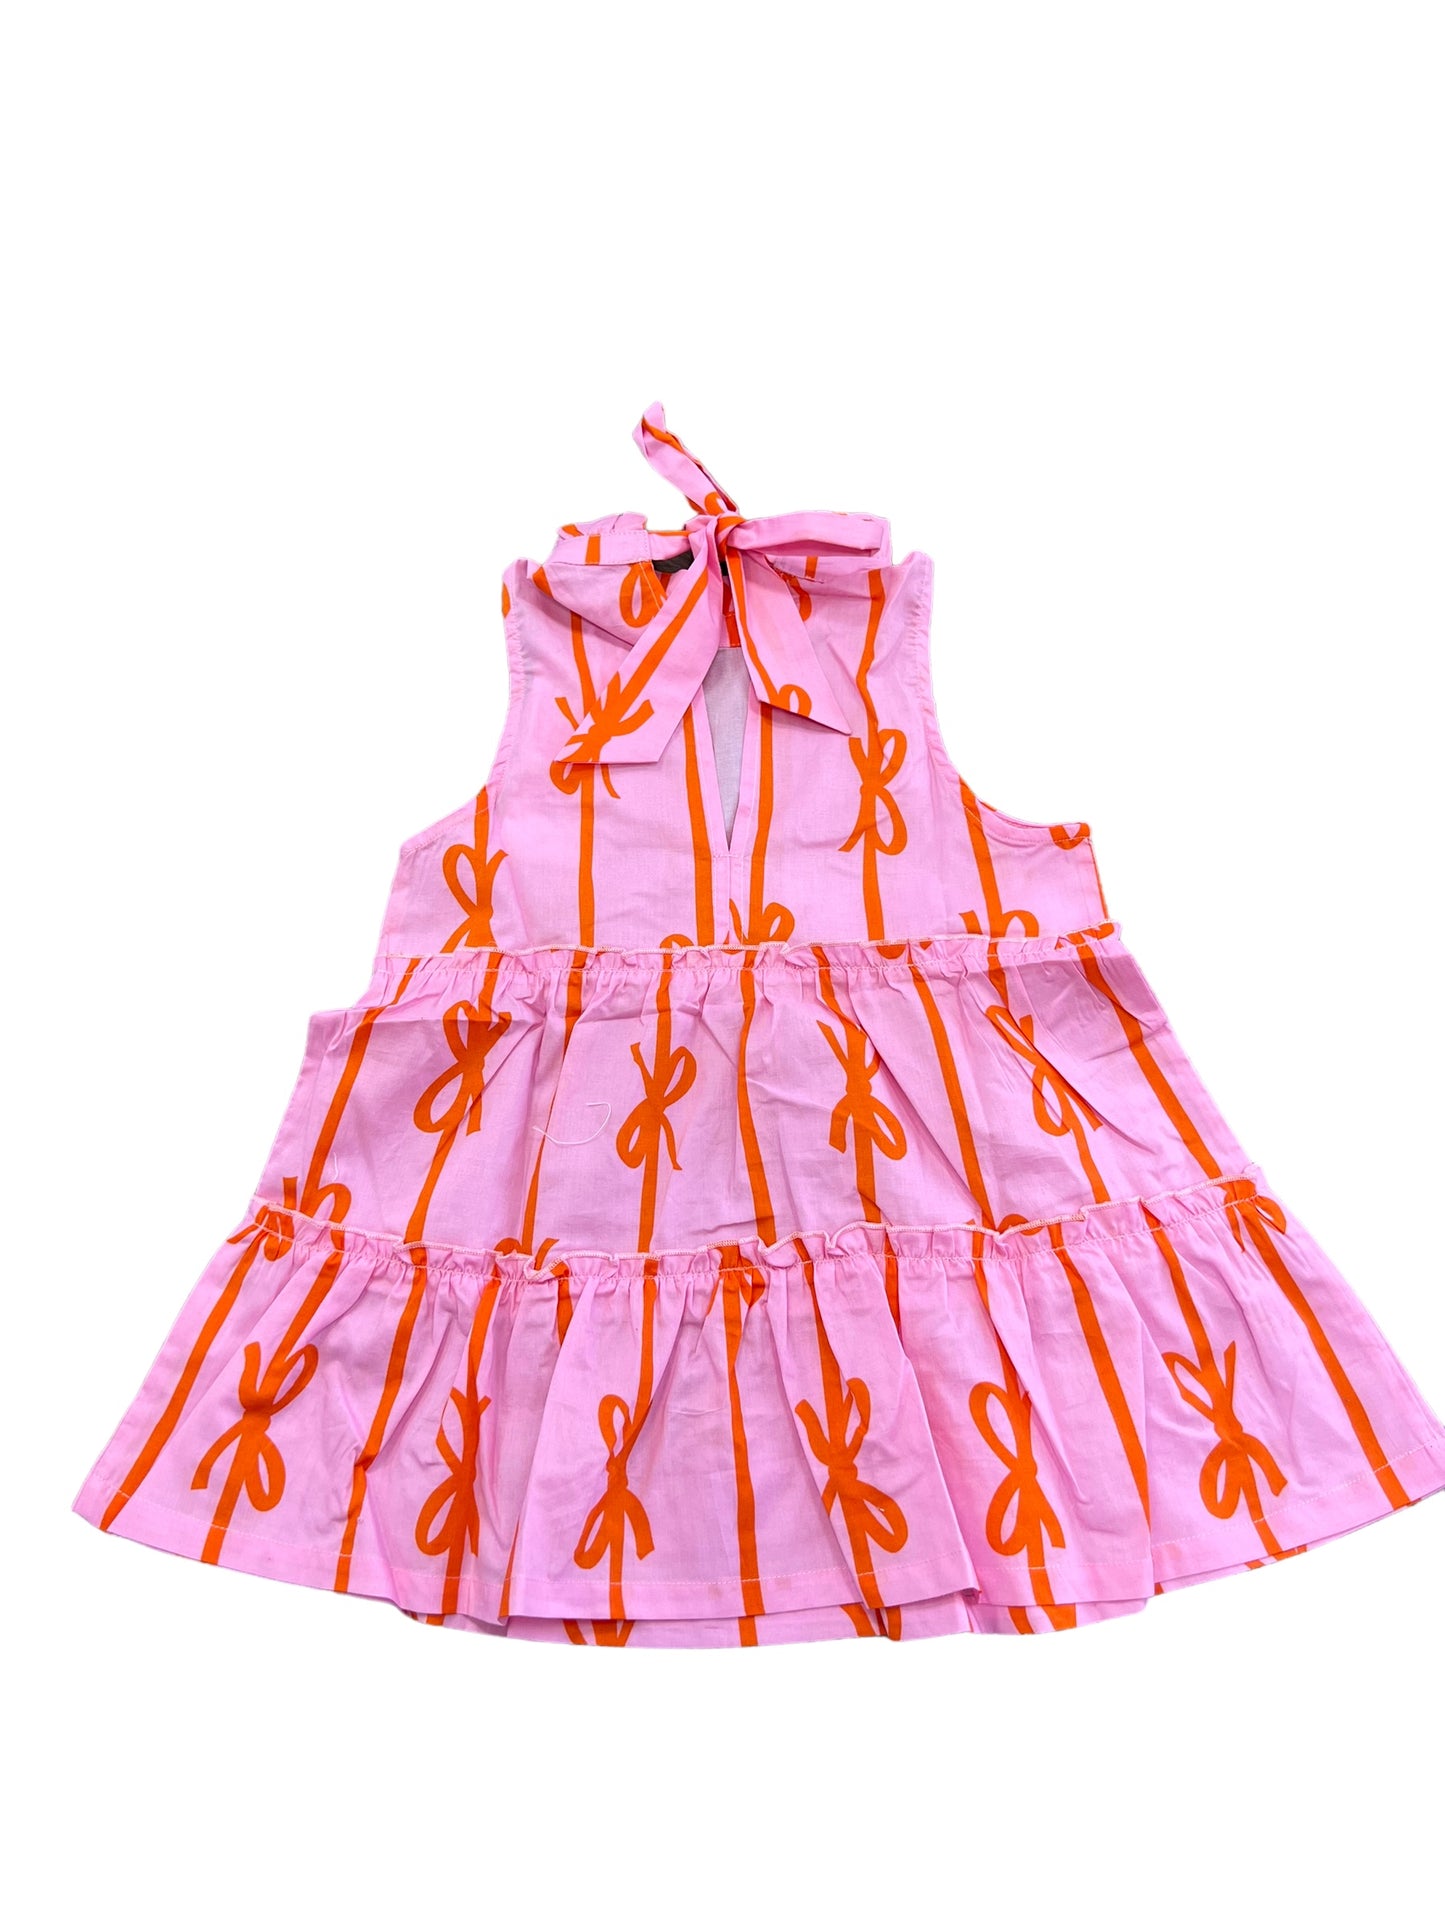 Addison Pink bow dress